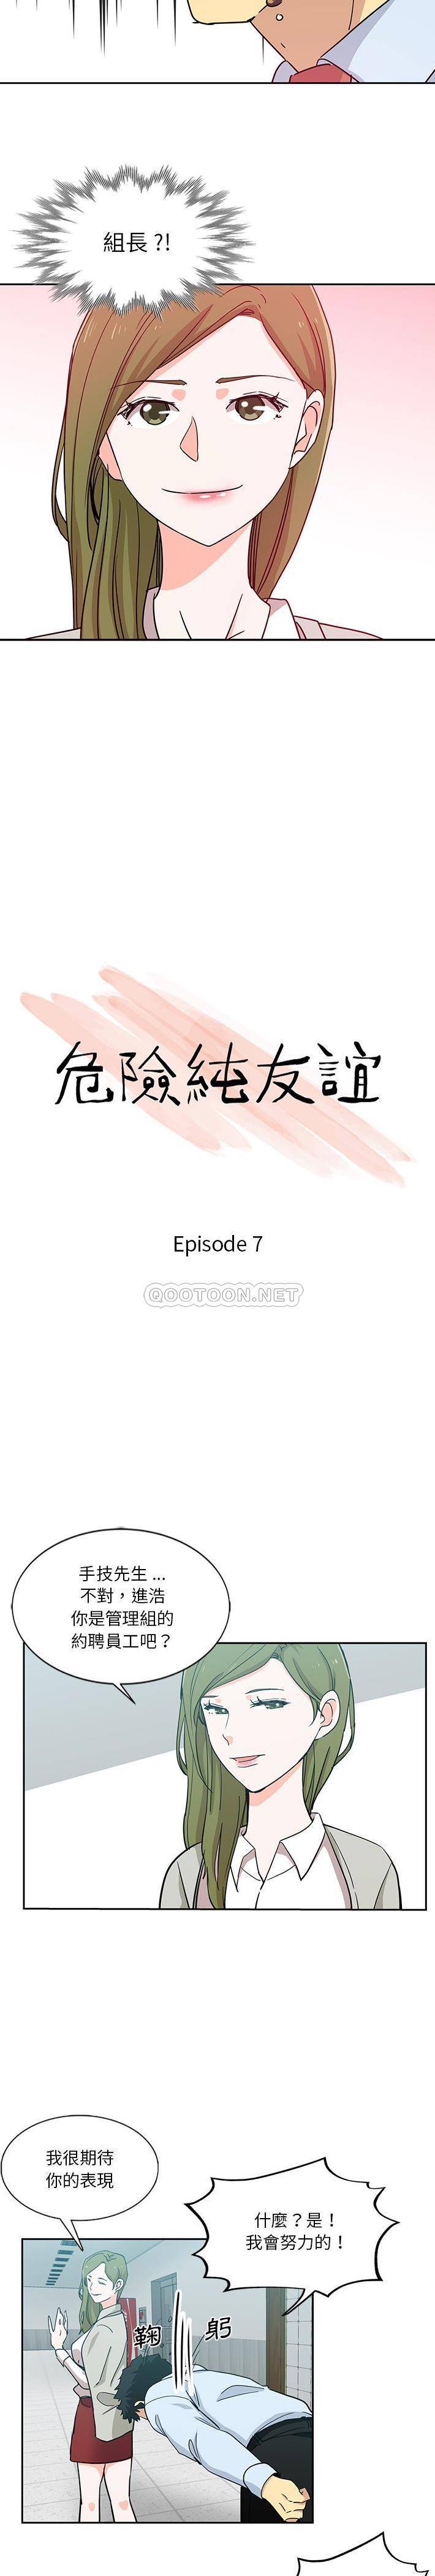 危险纯友谊  第7话 漫画图片2.jpg